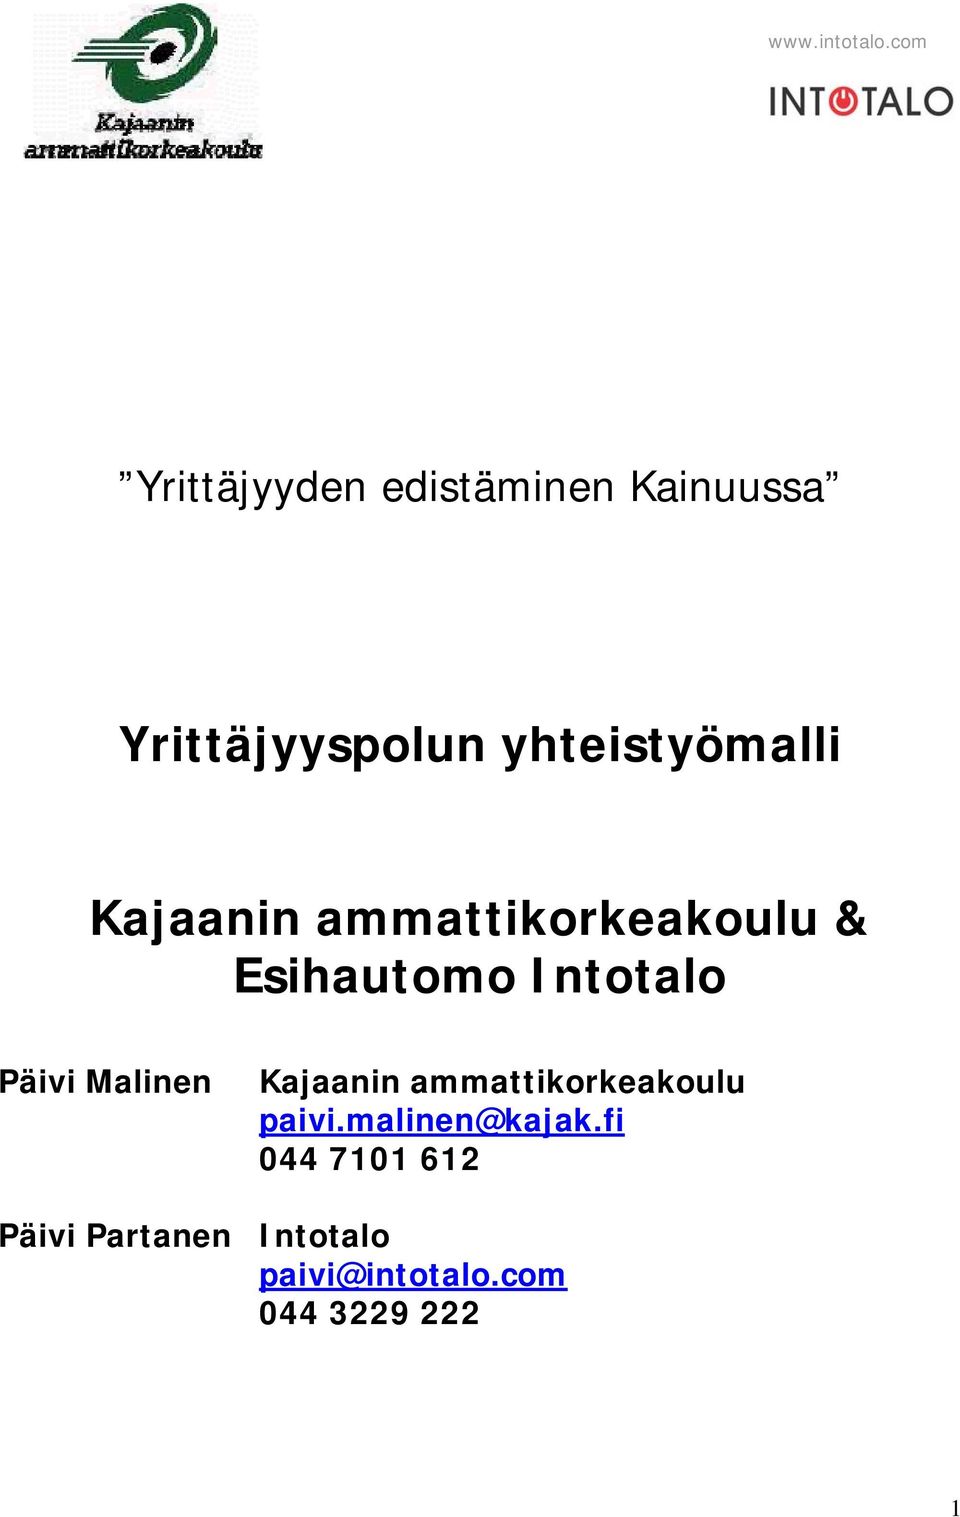 Intotalo Päivi Malinen Kajaanin ammattikorkeakoulu paivi.